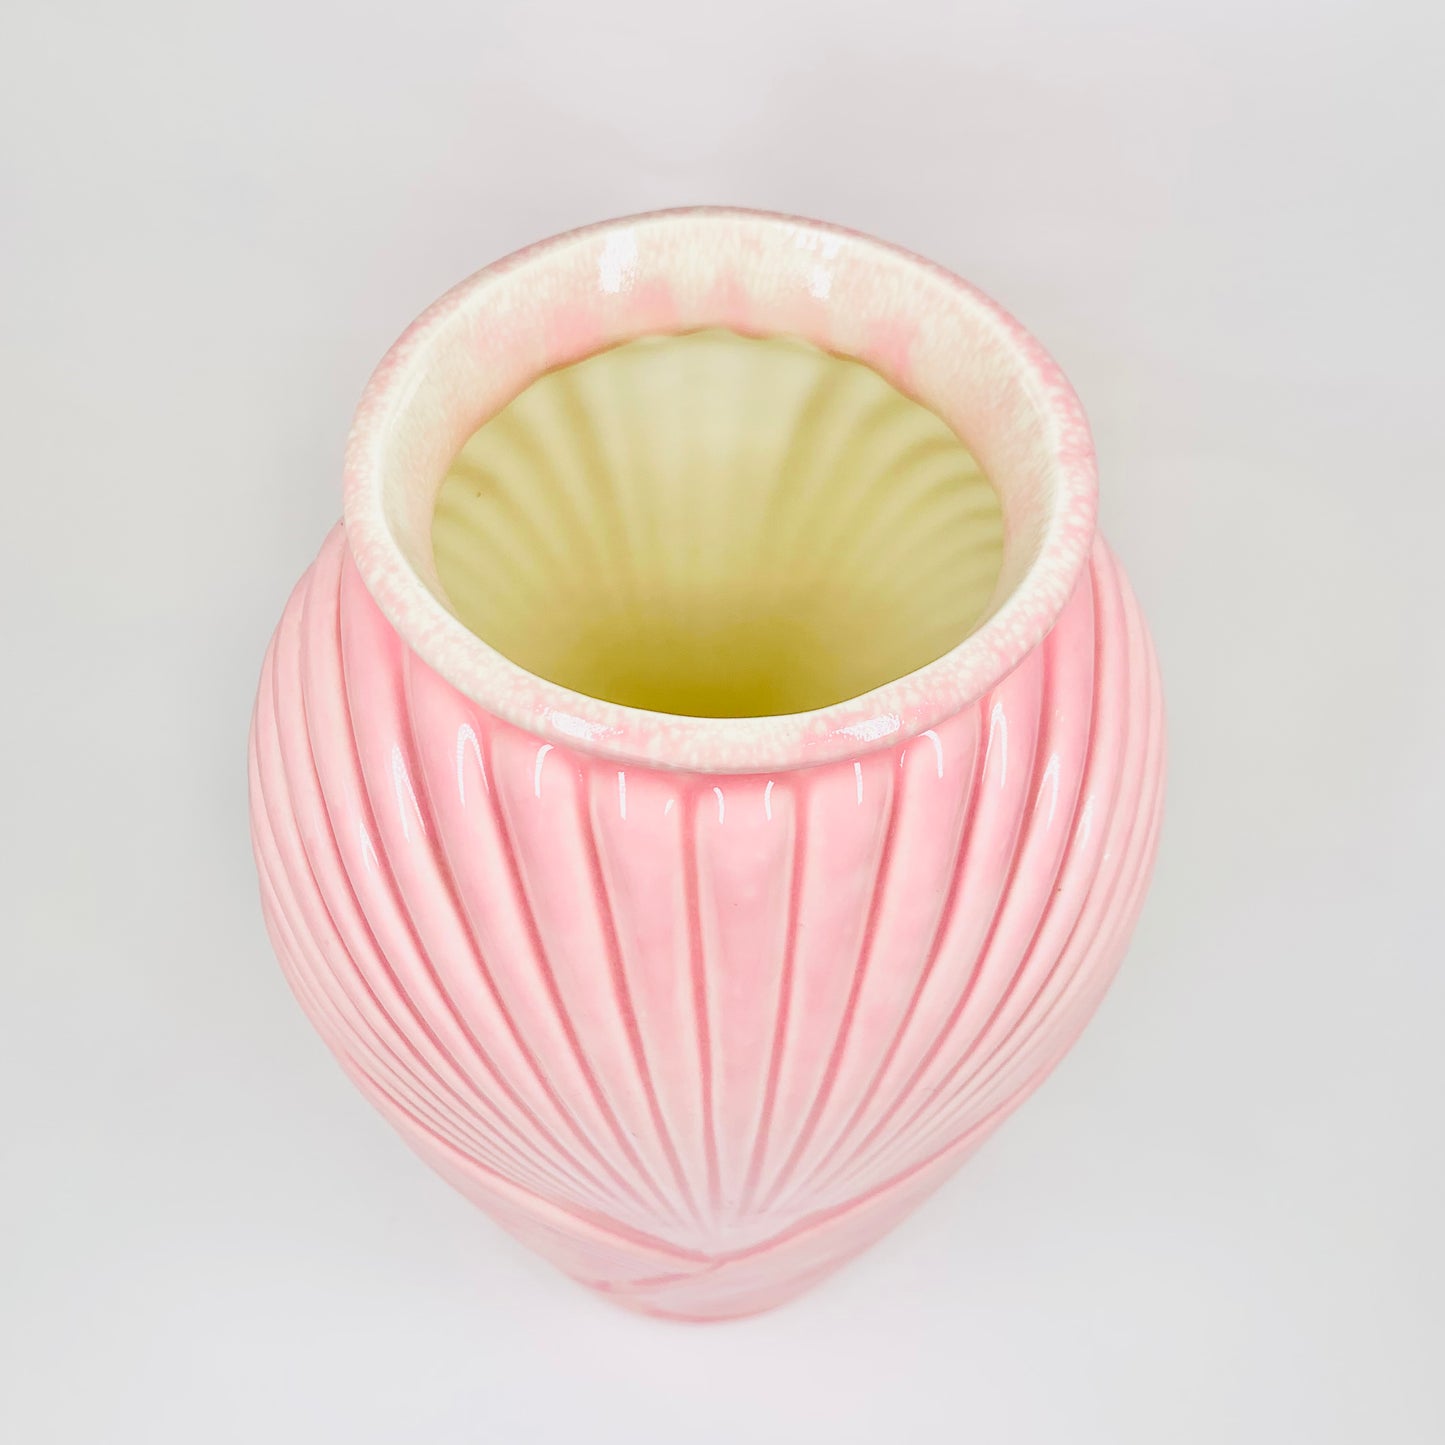 Rare hand painted 1980s Art Deco revival pink porcelain vase